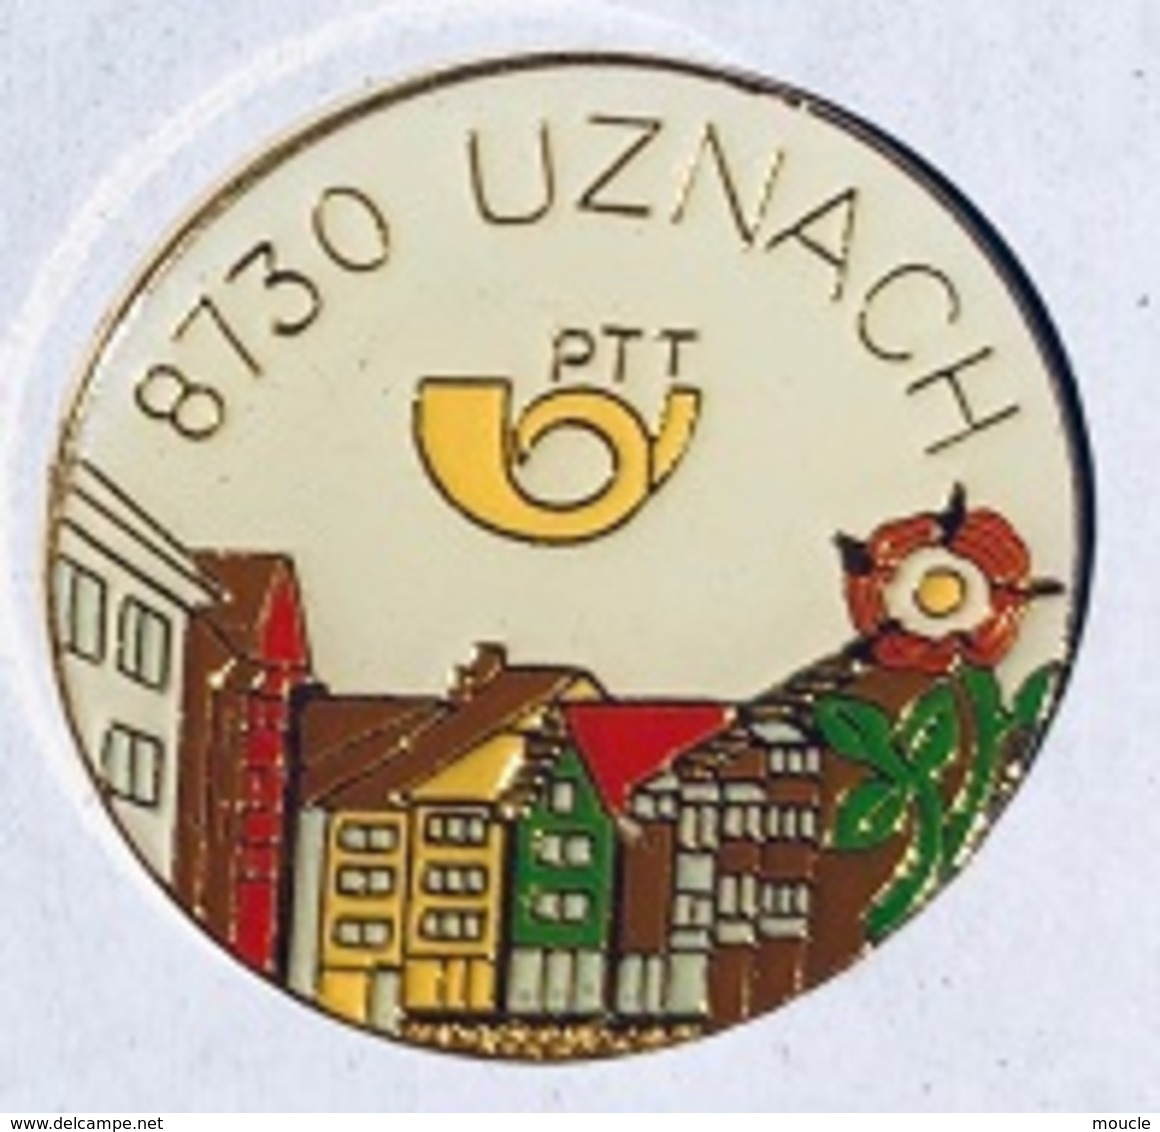 POSTE SUISSE - PTT - 8730 UZNACH - SCHWEIZ - SVIZZERA - SWITZERLAND - SUIZA - POST -                       (26) - Postwesen